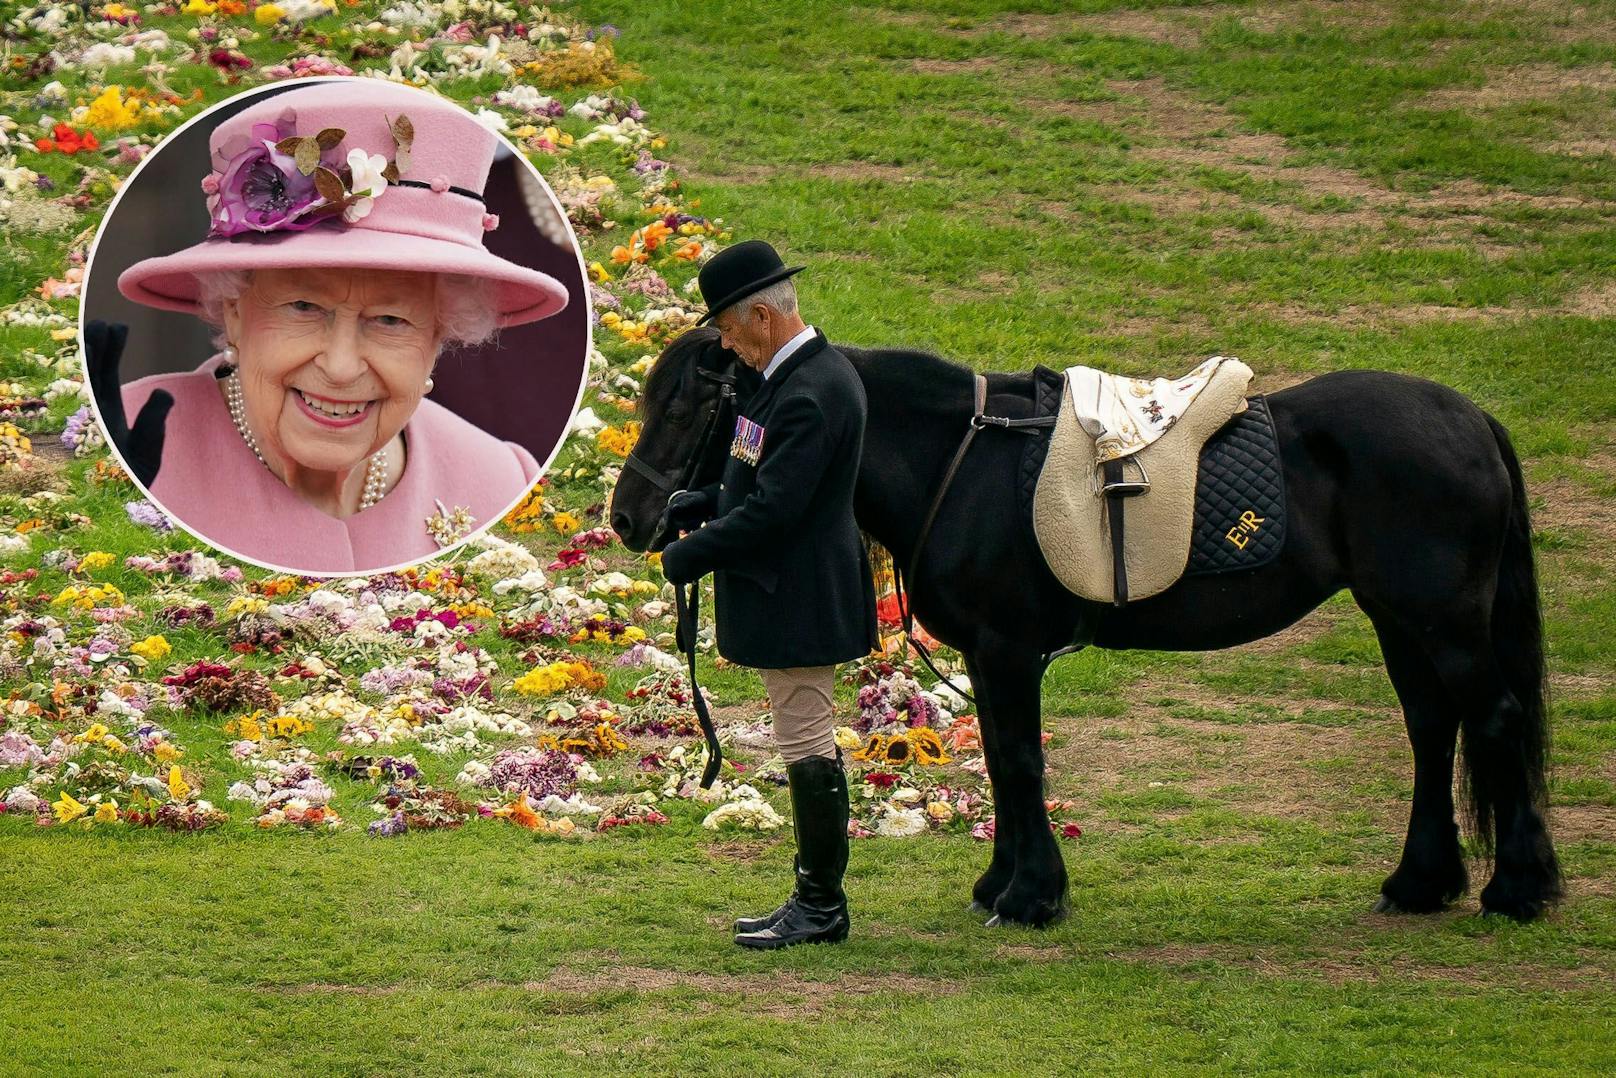 Royal-Insider: "Ihr Pony spürte, dass sie bald stirbt"